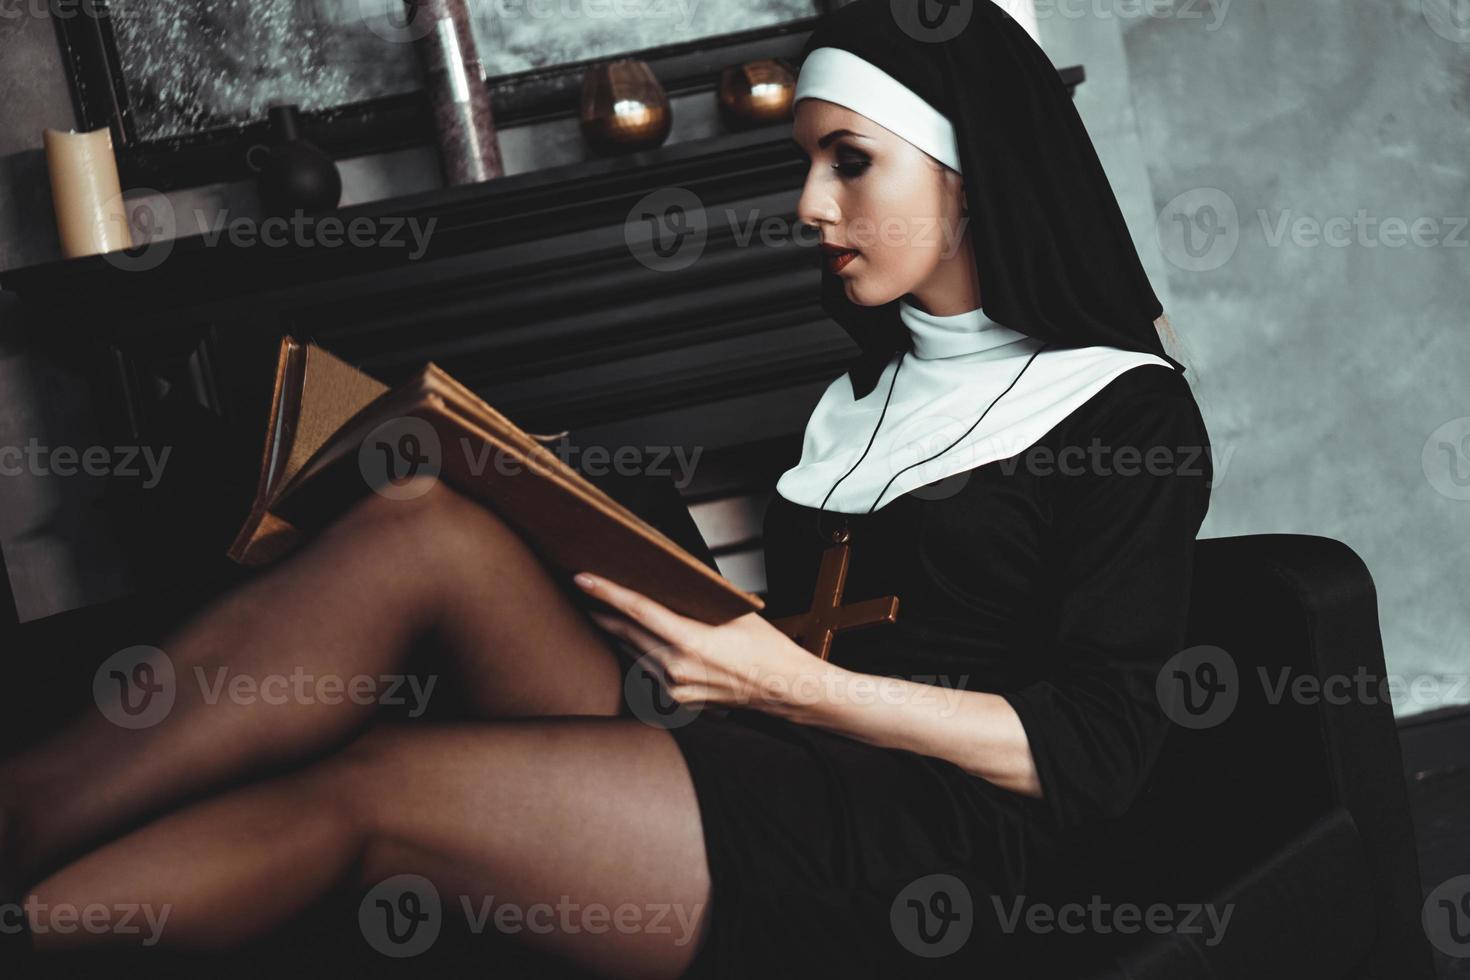 belle jeune nonne en costume noir de religion détient la bible. religion photo